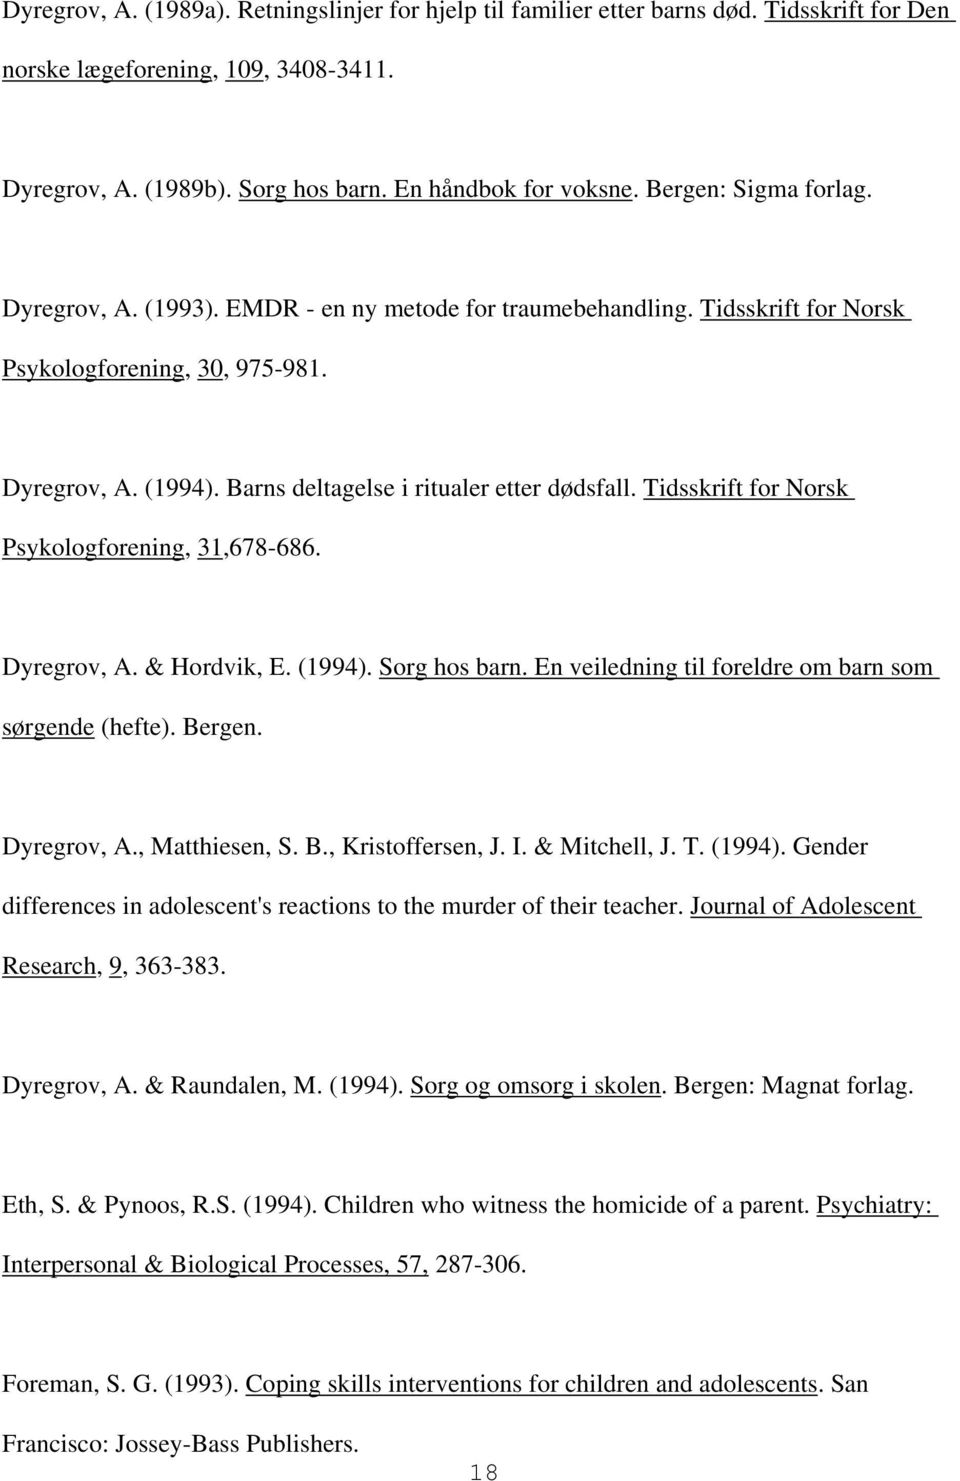 Barns deltagelse i ritualer etter dødsfall. Tidsskrift for Norsk Psykologforening, 31,678-686. Dyregrov, A. & Hordvik, E. (1994). Sorg hos barn.